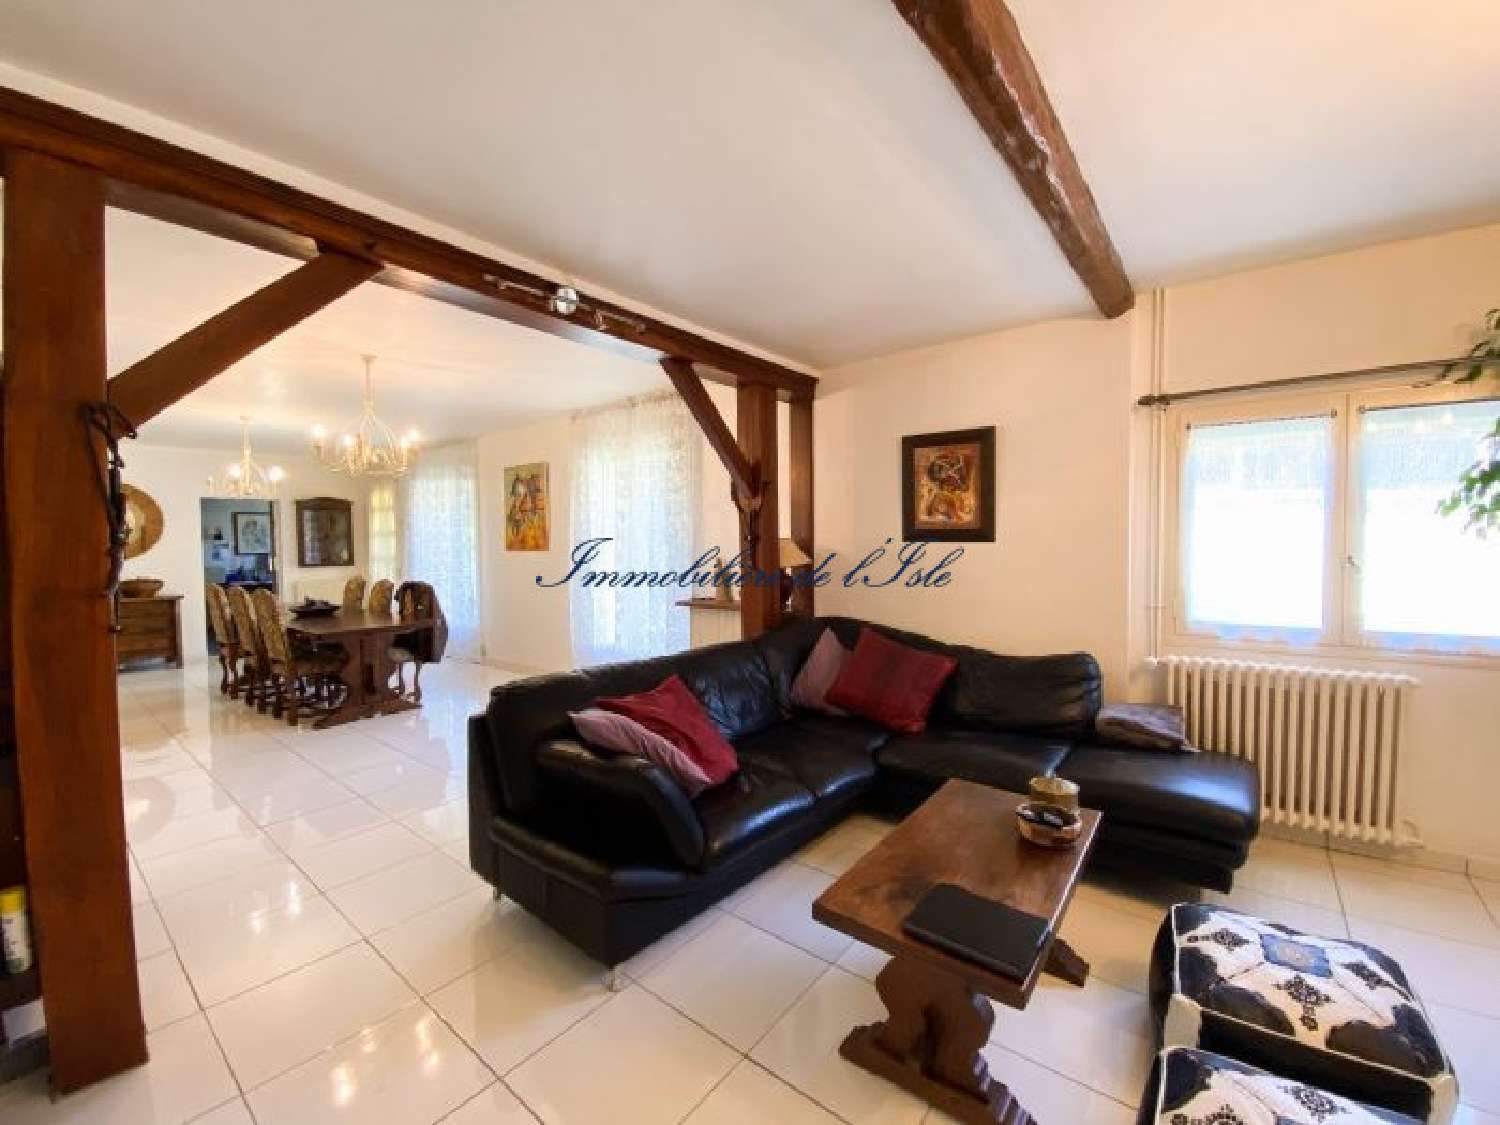  à vendre maison Saint-Astier Dordogne 6